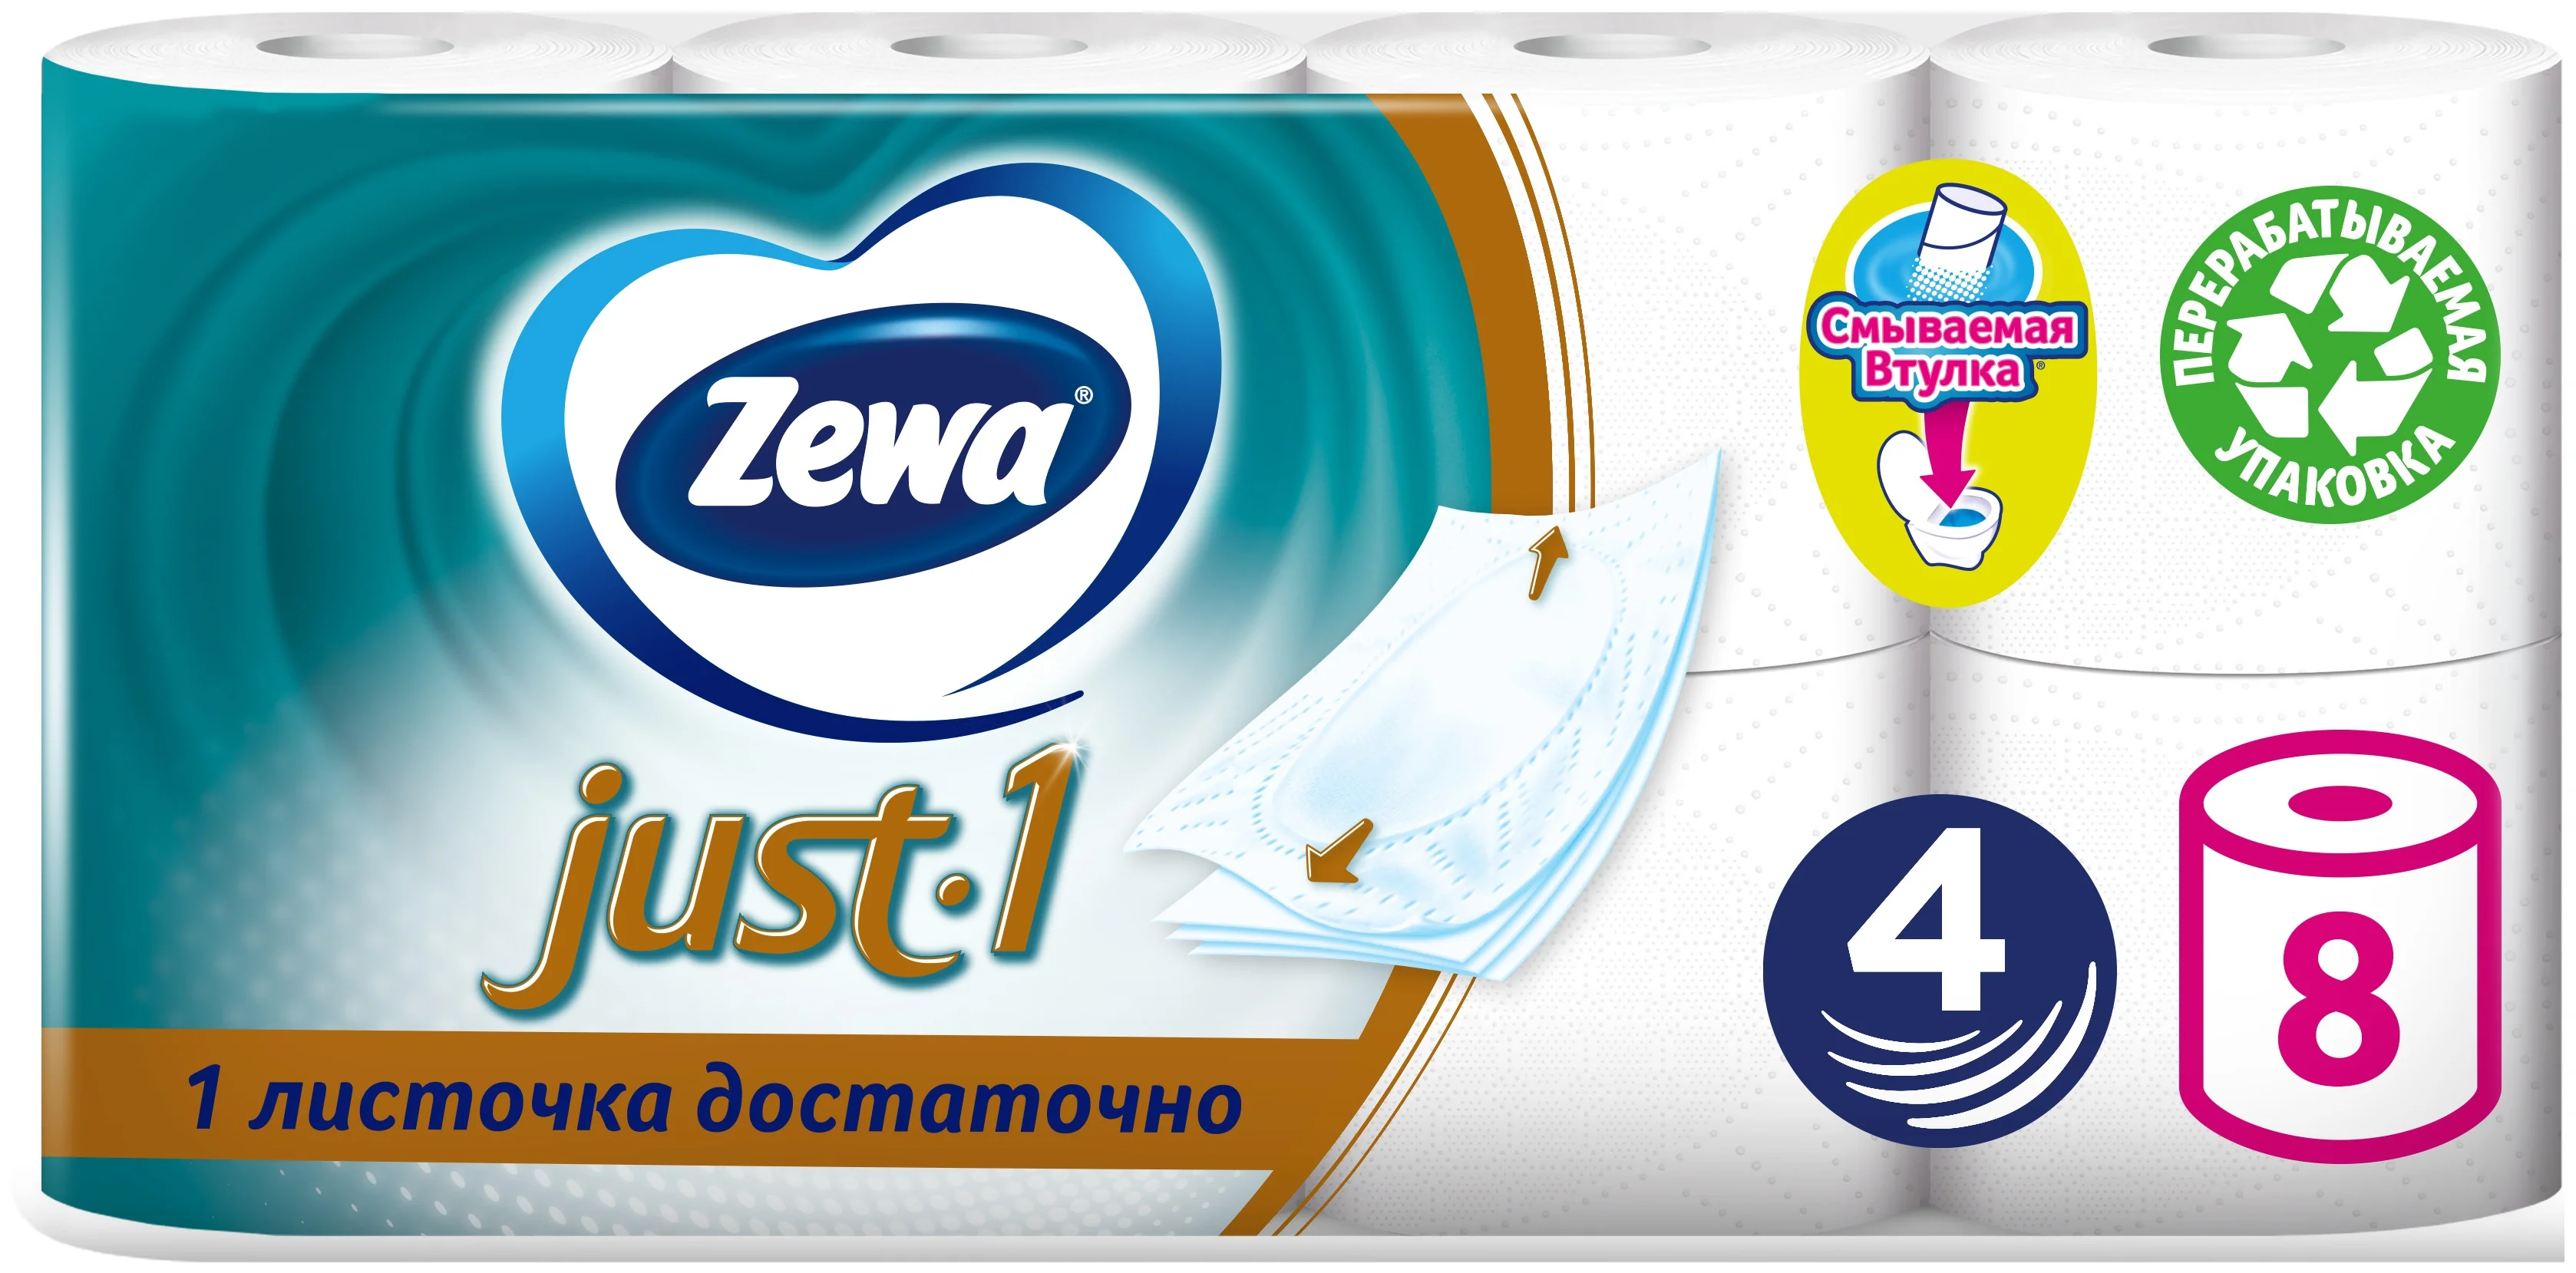 Zewa Just1 - экомаркировка: FSC Mix